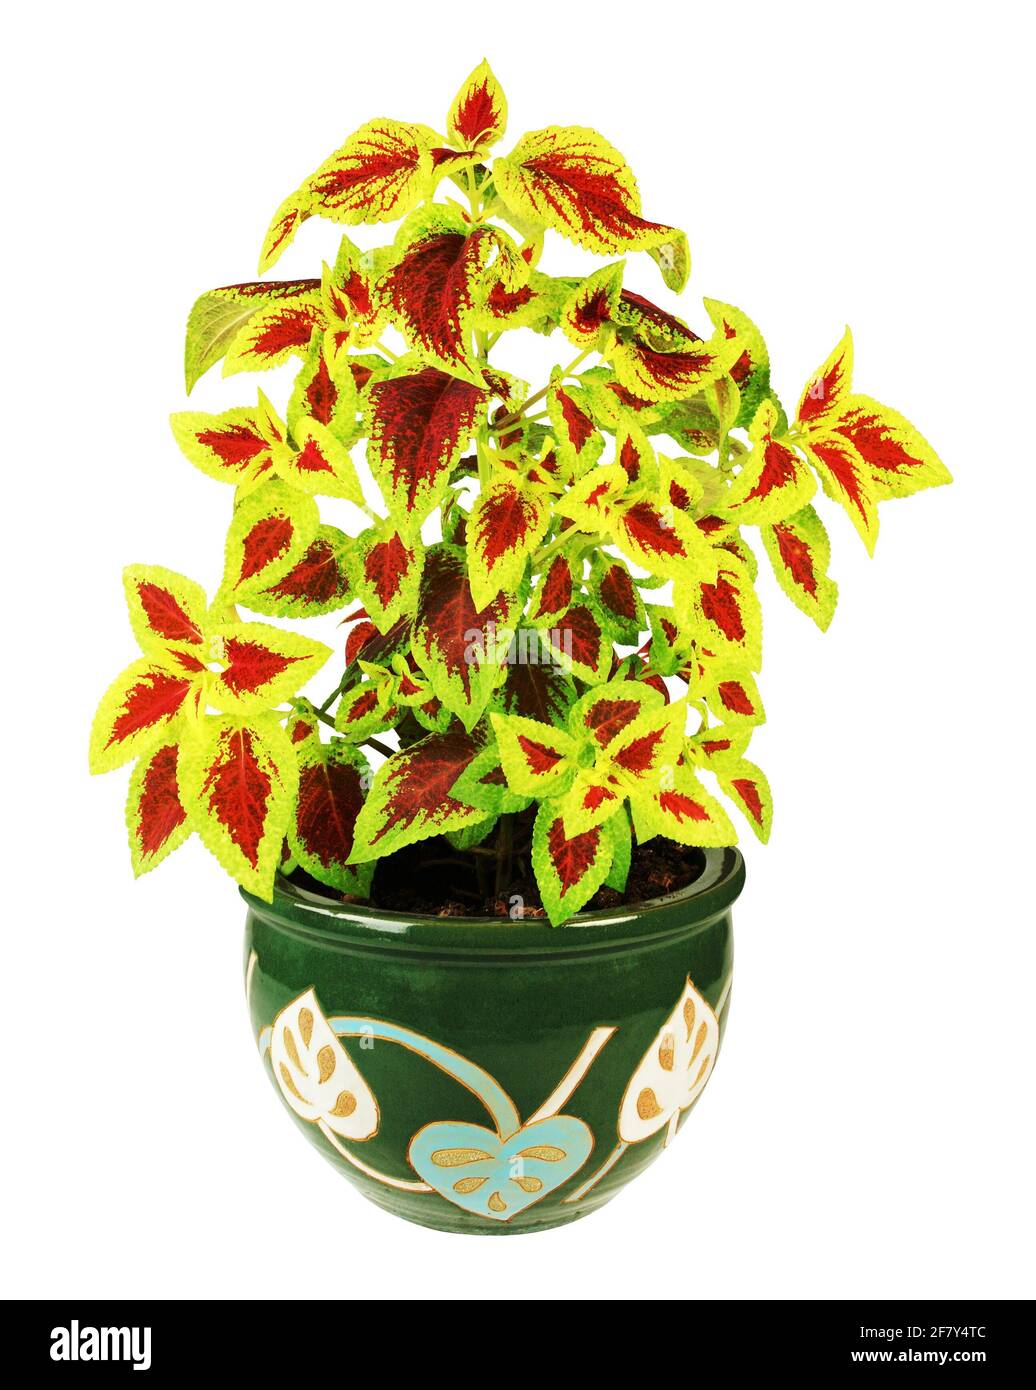 Schöne Coleus-Pflanze in einem dekorierten Topf, isoliert auf weißem Hintergrund Stockfoto